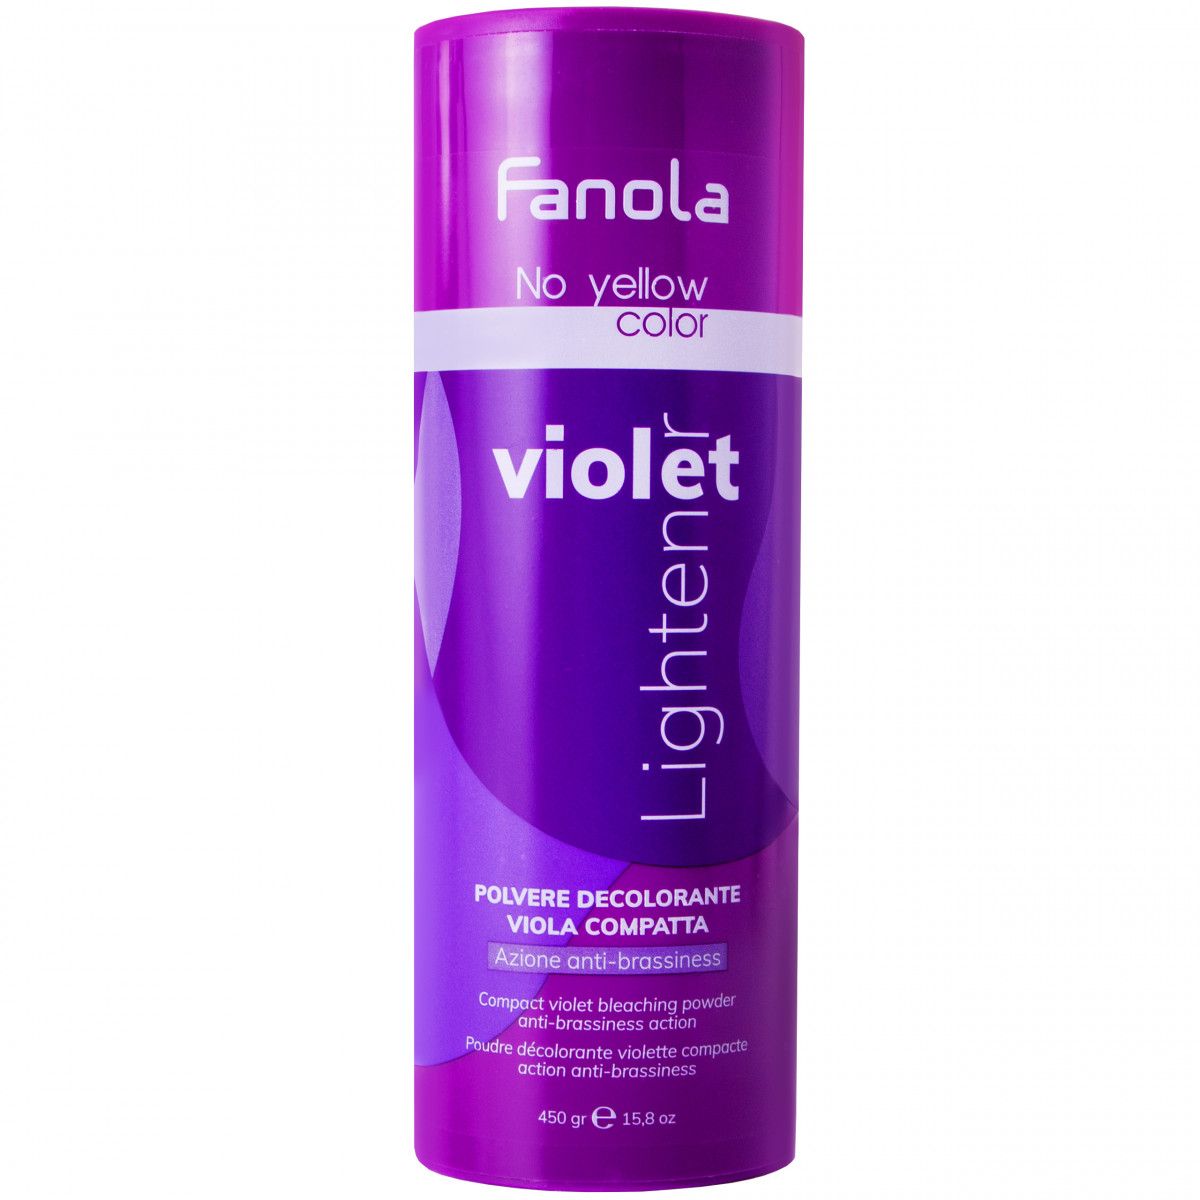 Fanola No Yellow Violet - rozjaśniacz do włosów, 450g